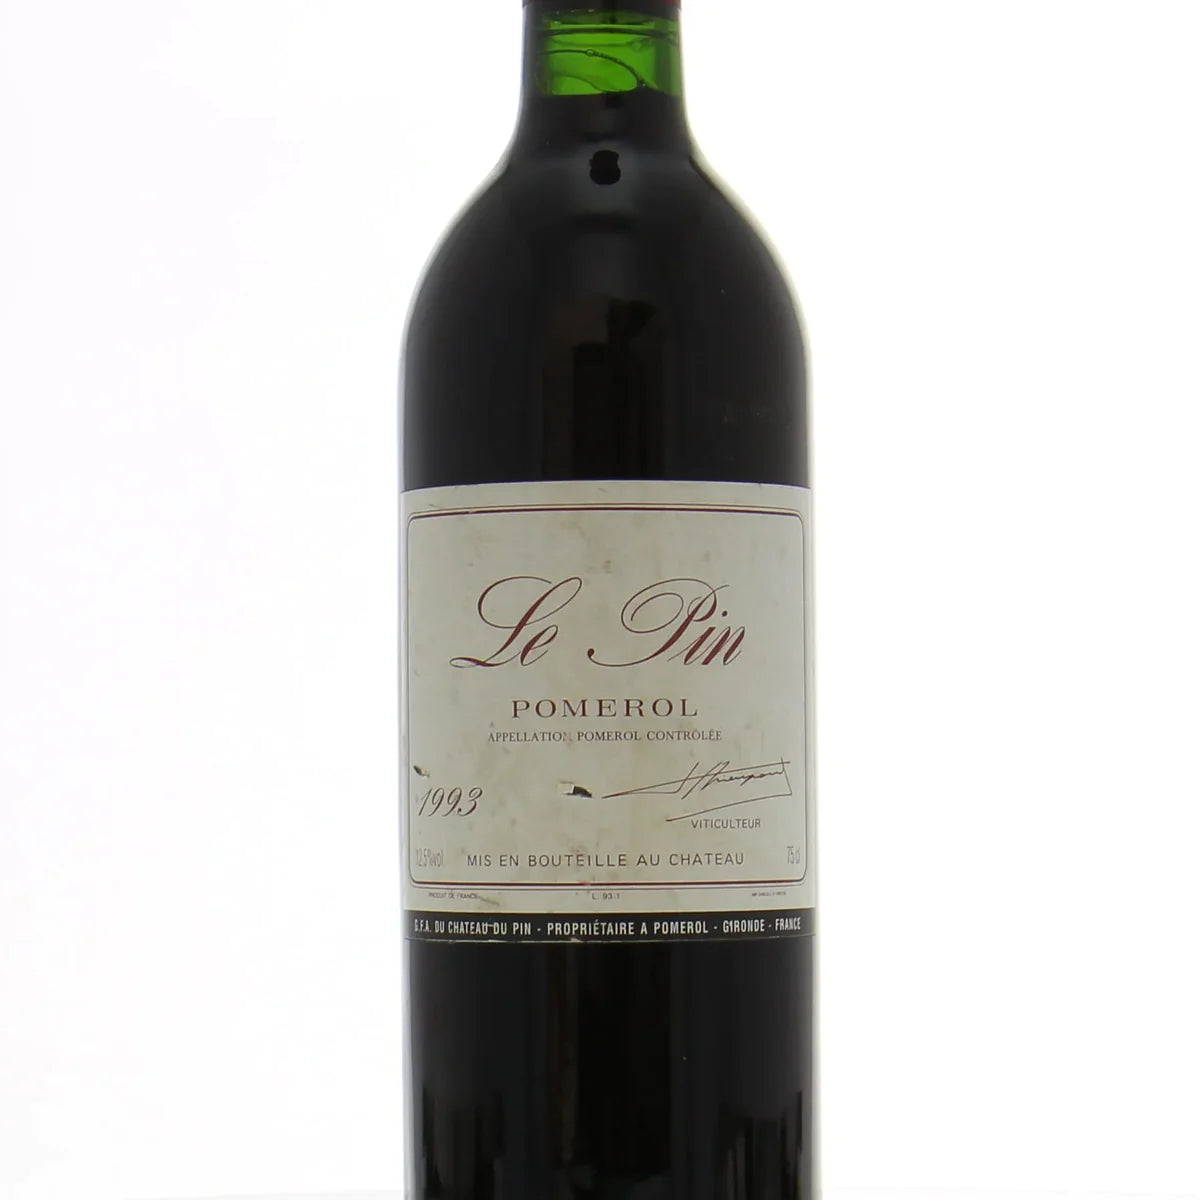 高價收購紅酒 上門回收裡鵬Le Pin Pomerol 1993 系列紅酒